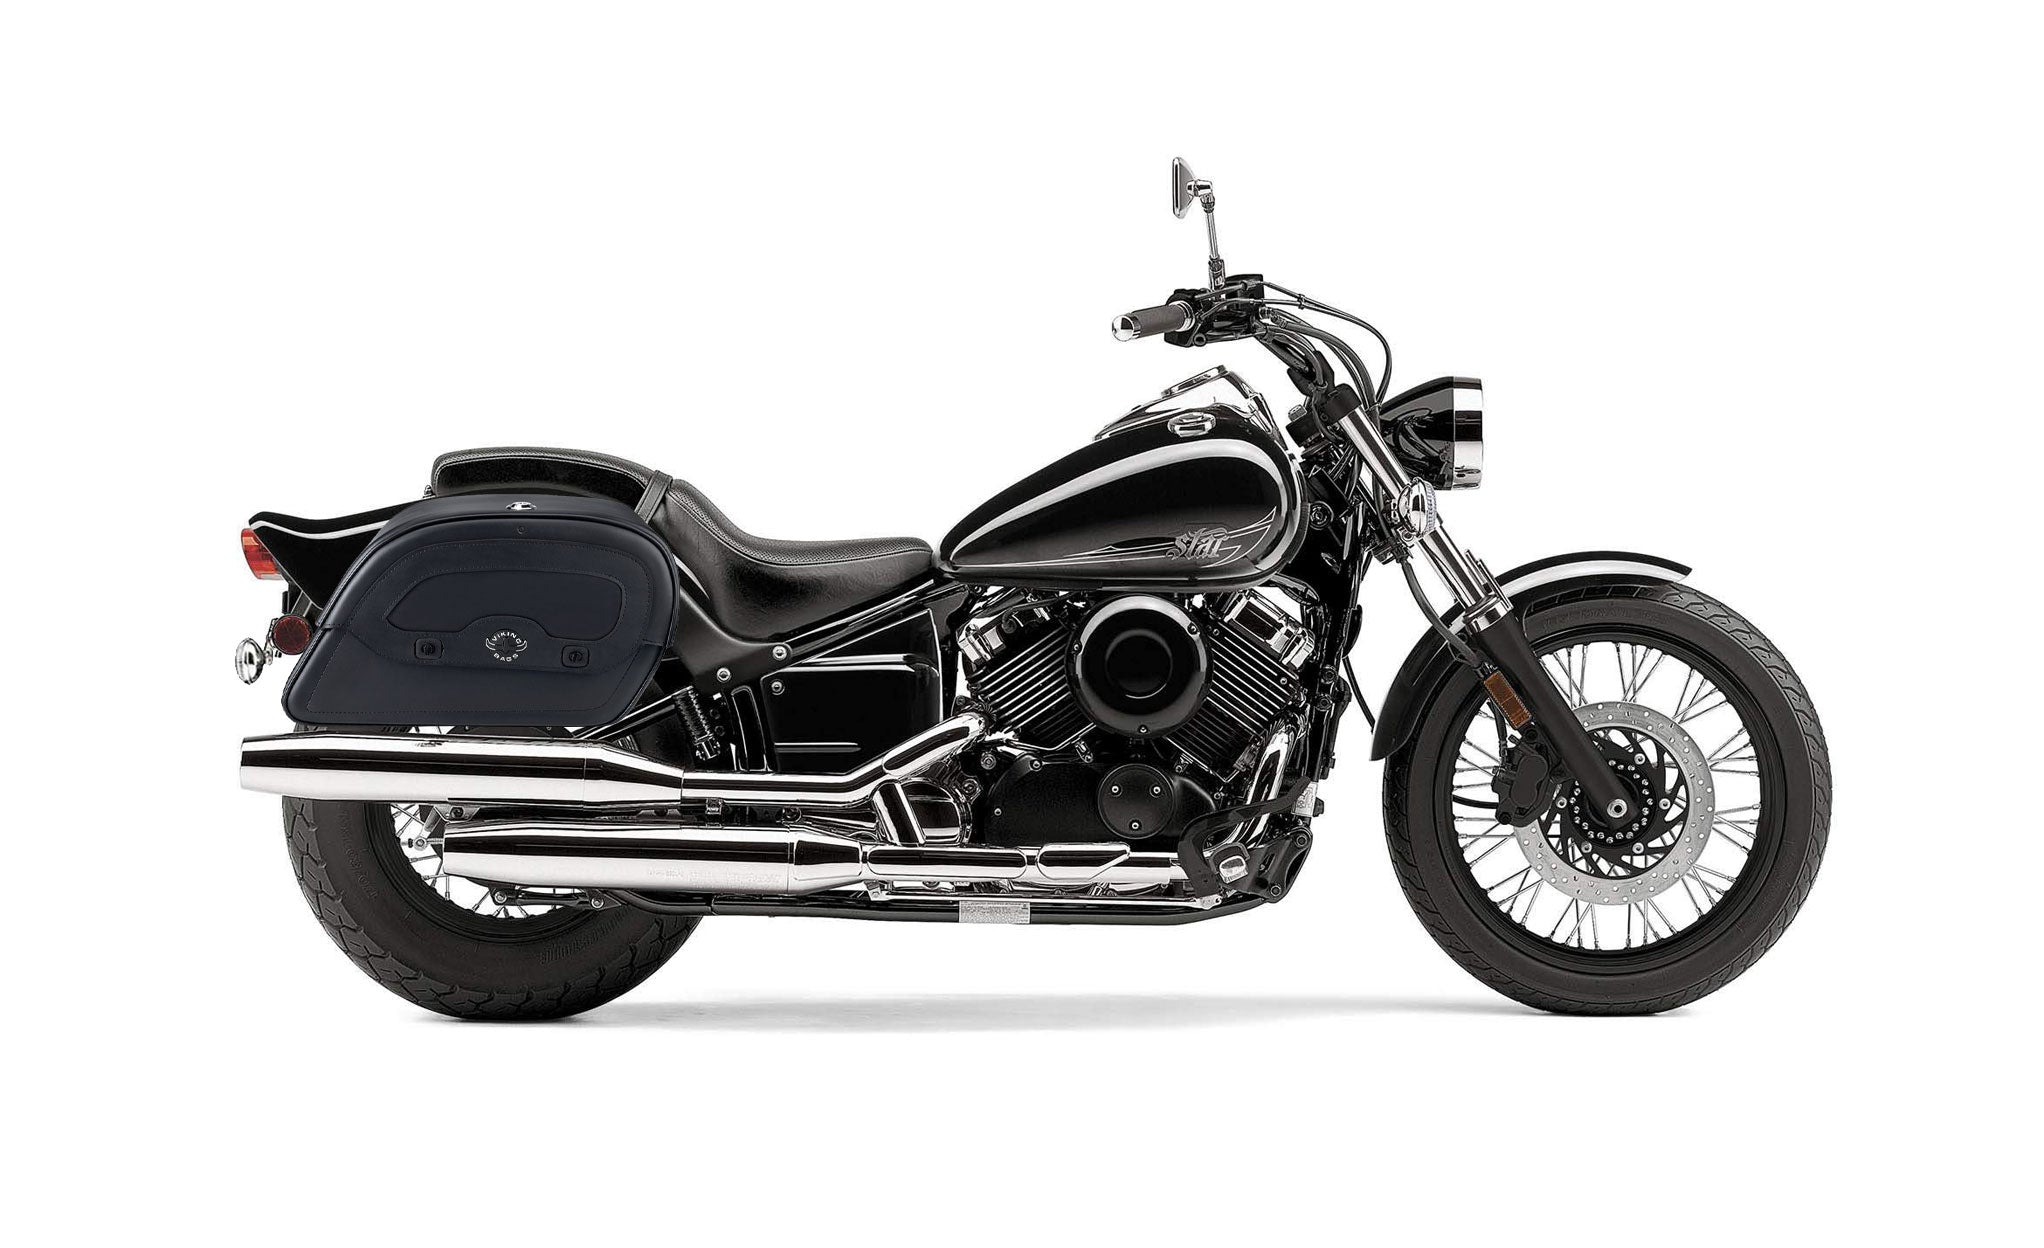 Viking Warrior Large Yamaha V Star 650 Custom Xvs65T Leather Motorcycle Saddlebags on Bike Photo @expand